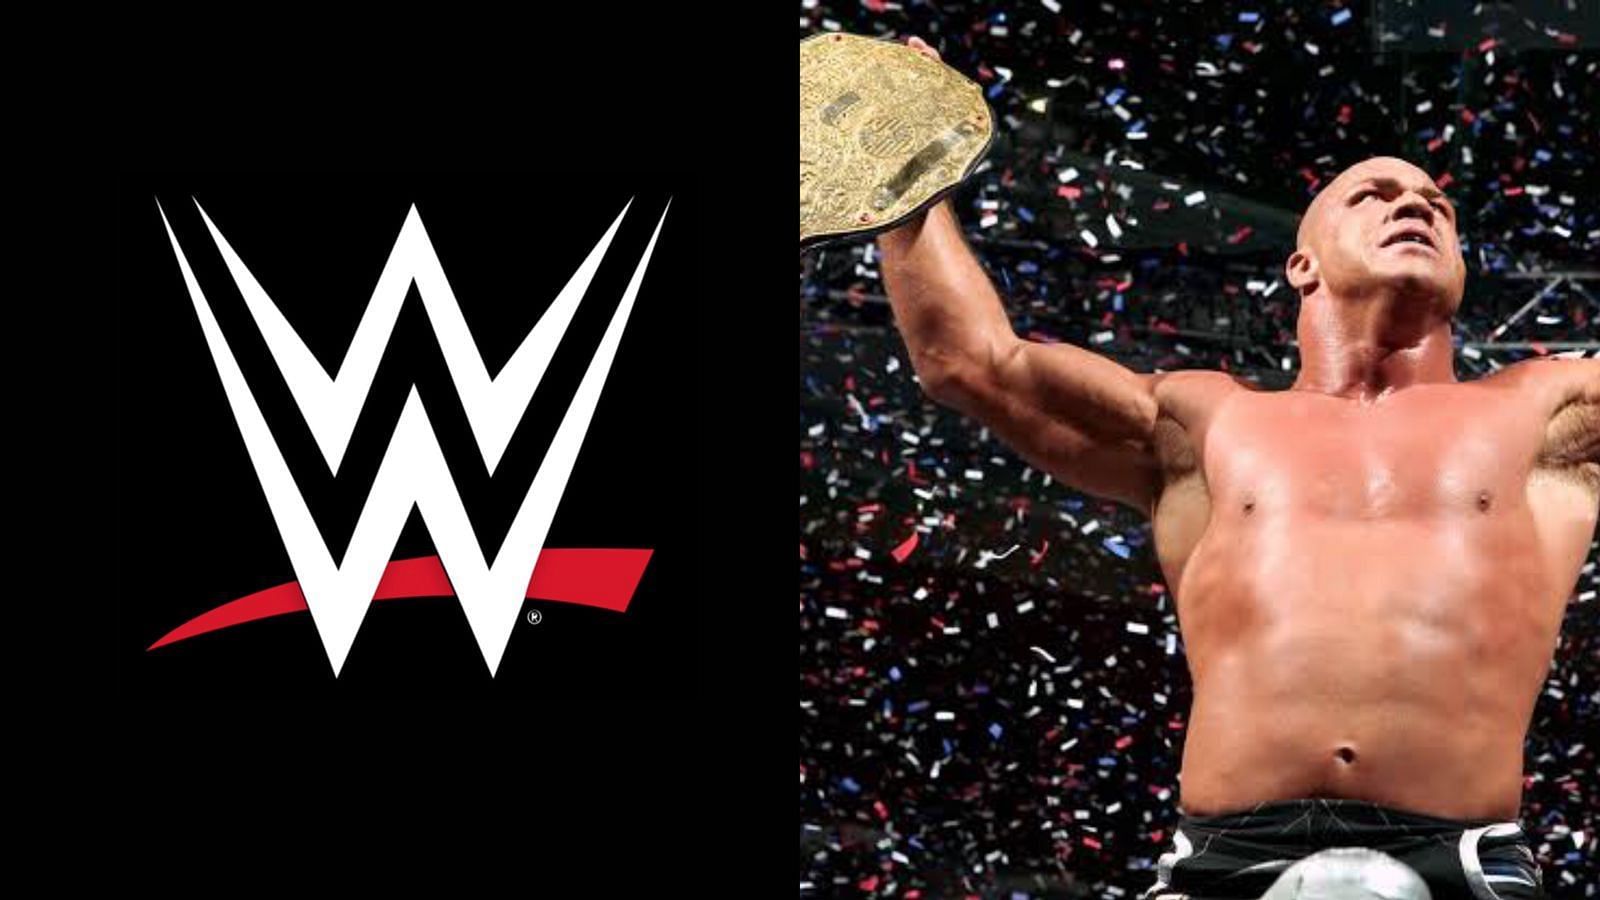 Kurt Angle is a former four-time WWE Champion